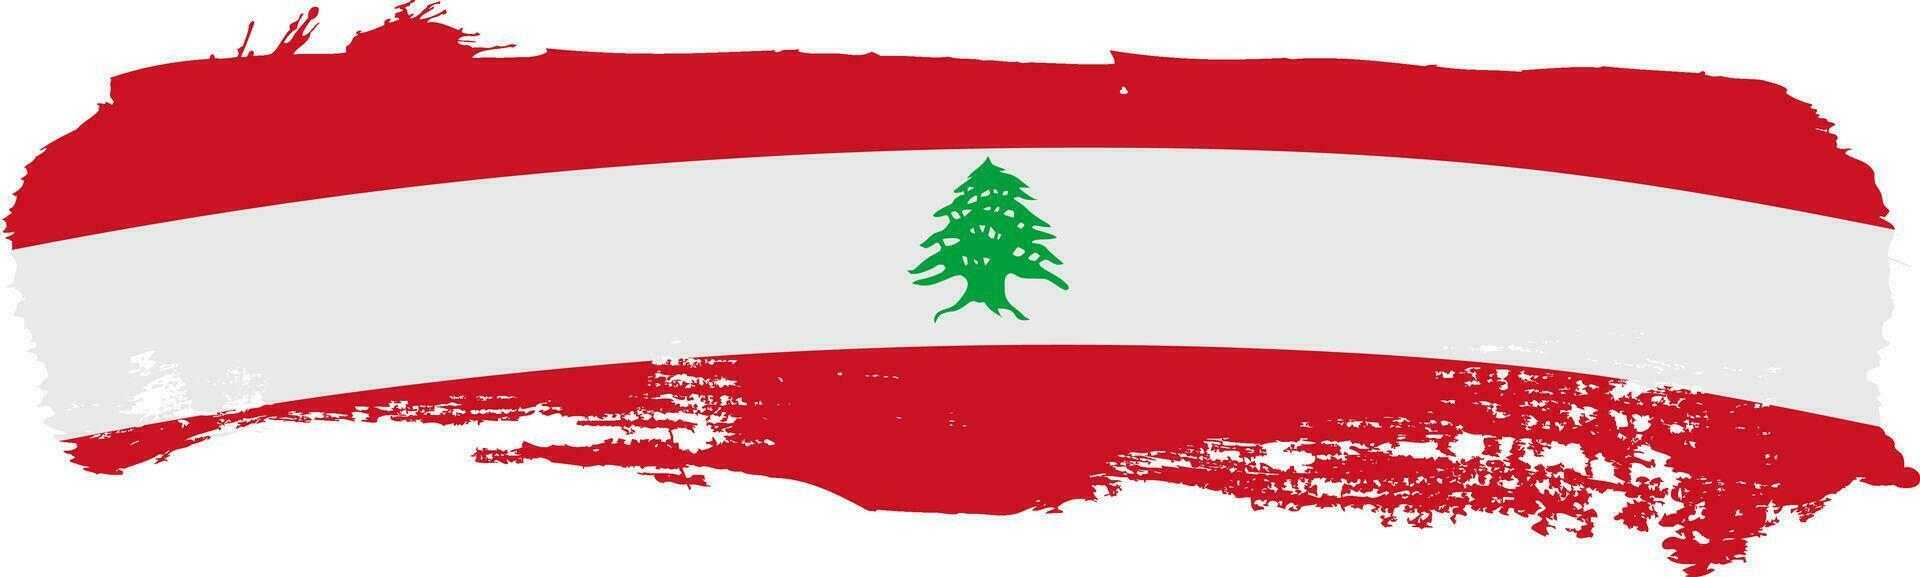 brushstroke lebanon flag. vector illustration